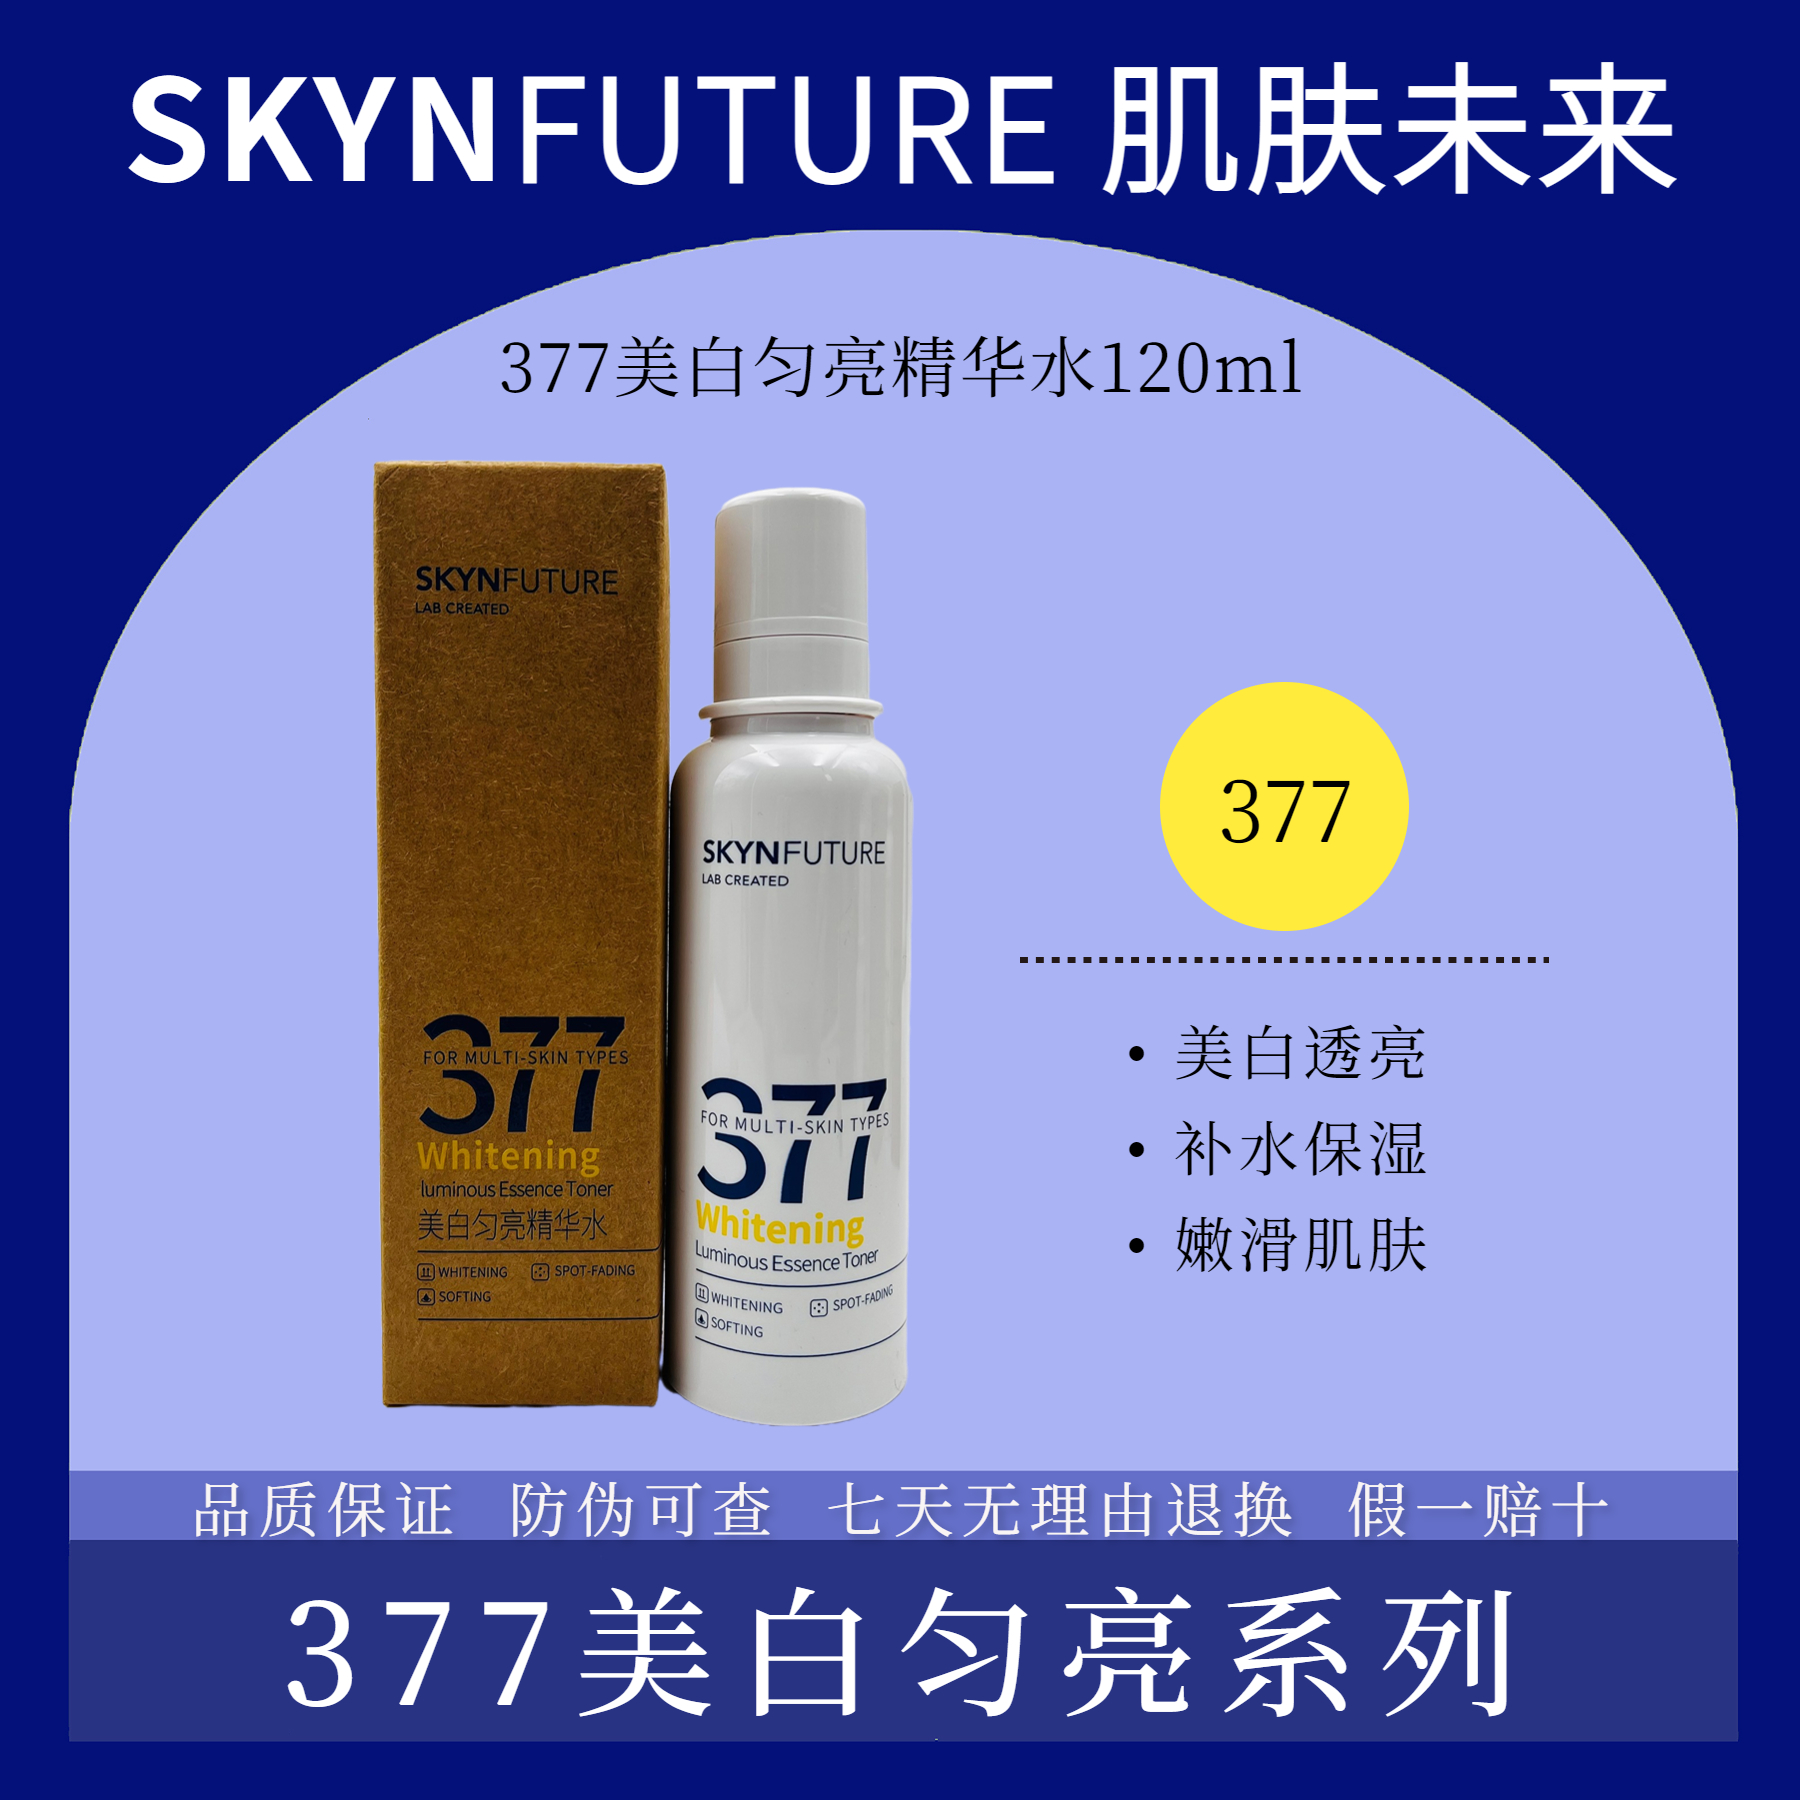  肌膚未來377煙酰胺美白均亮溫和保溼水精華液補水乳液修護祛斑霜